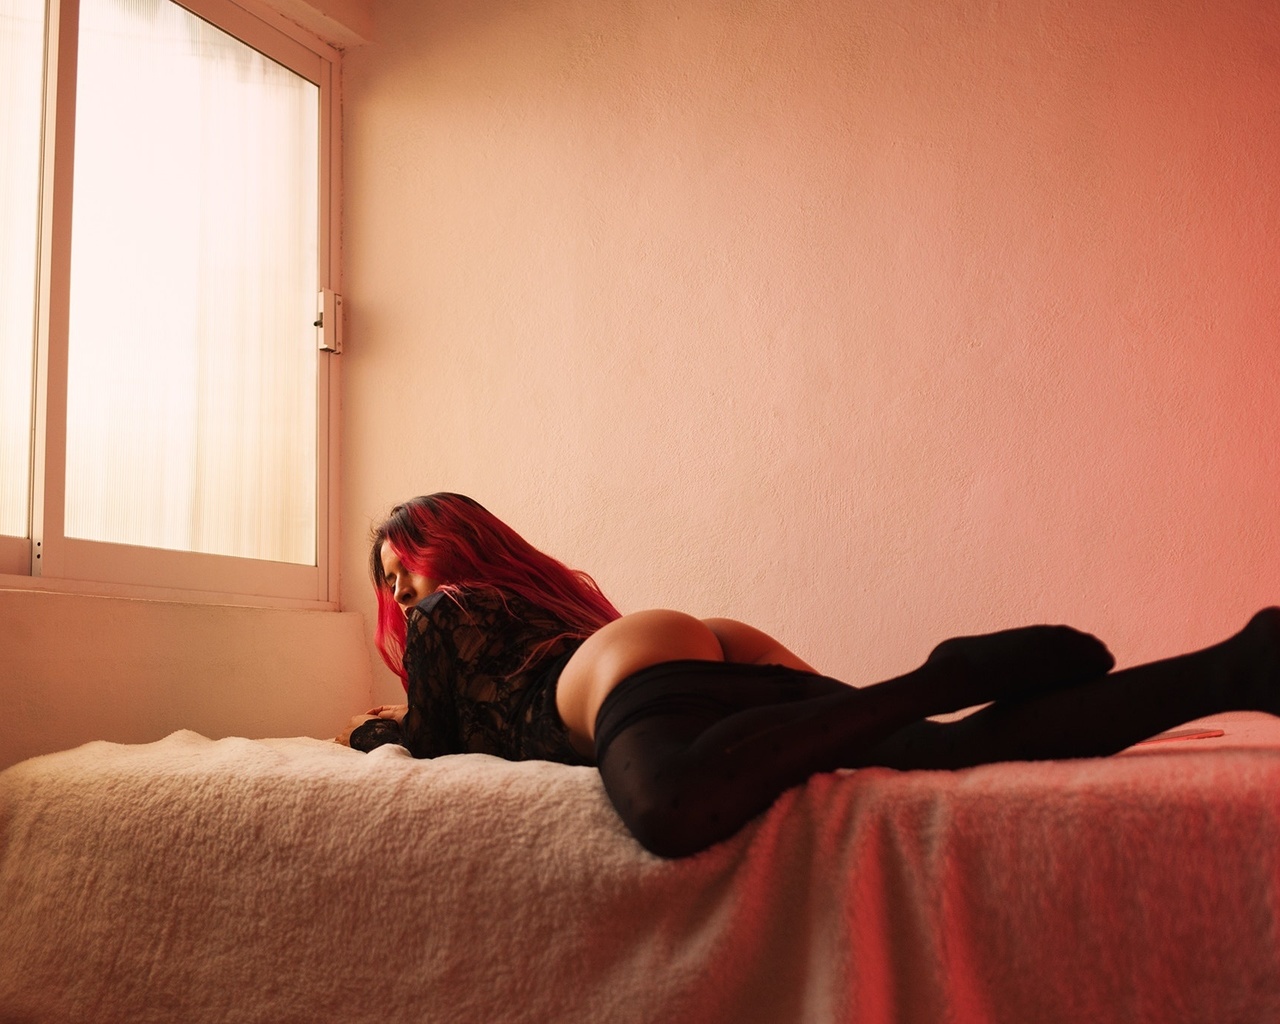 Сексуальная девушка лежит в колготках в постели